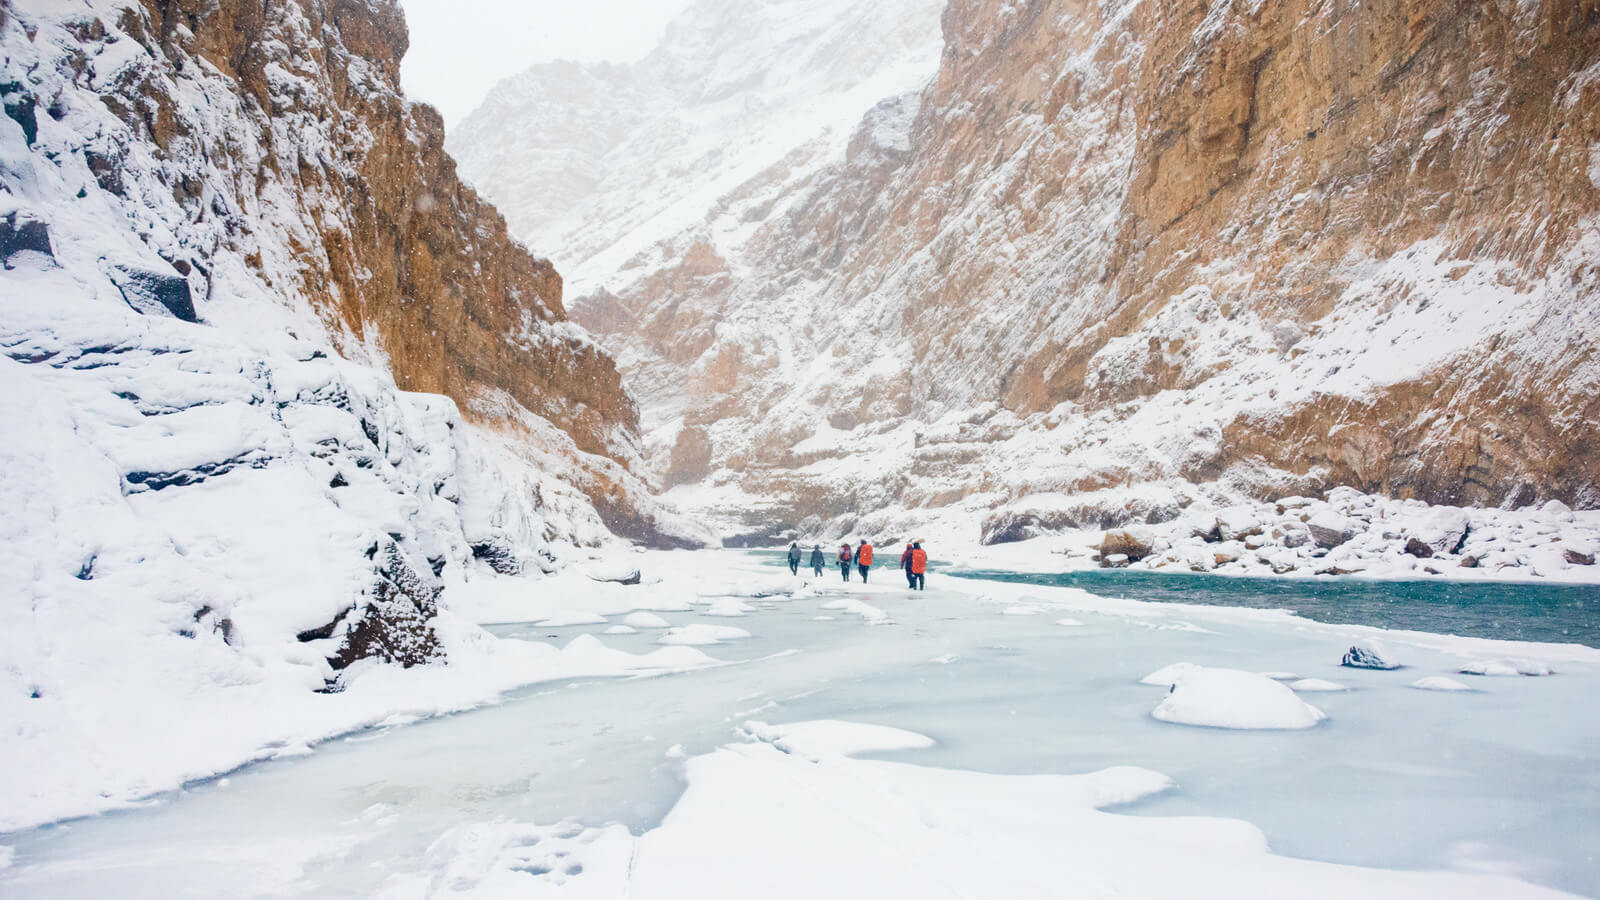 Zanskar Frozen River, Ladakh